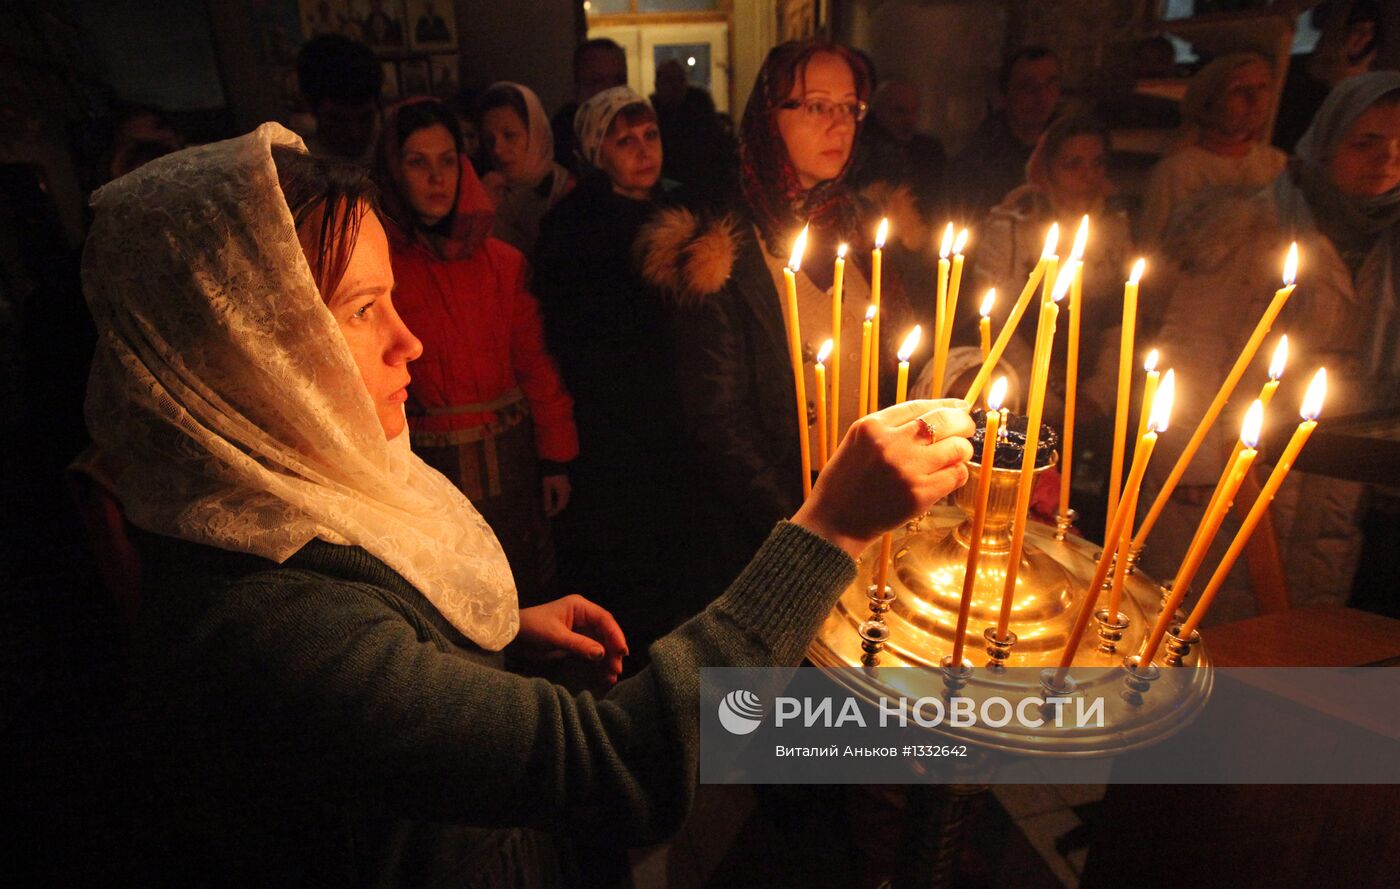 Празднование Рождества Христова во Владивостоке